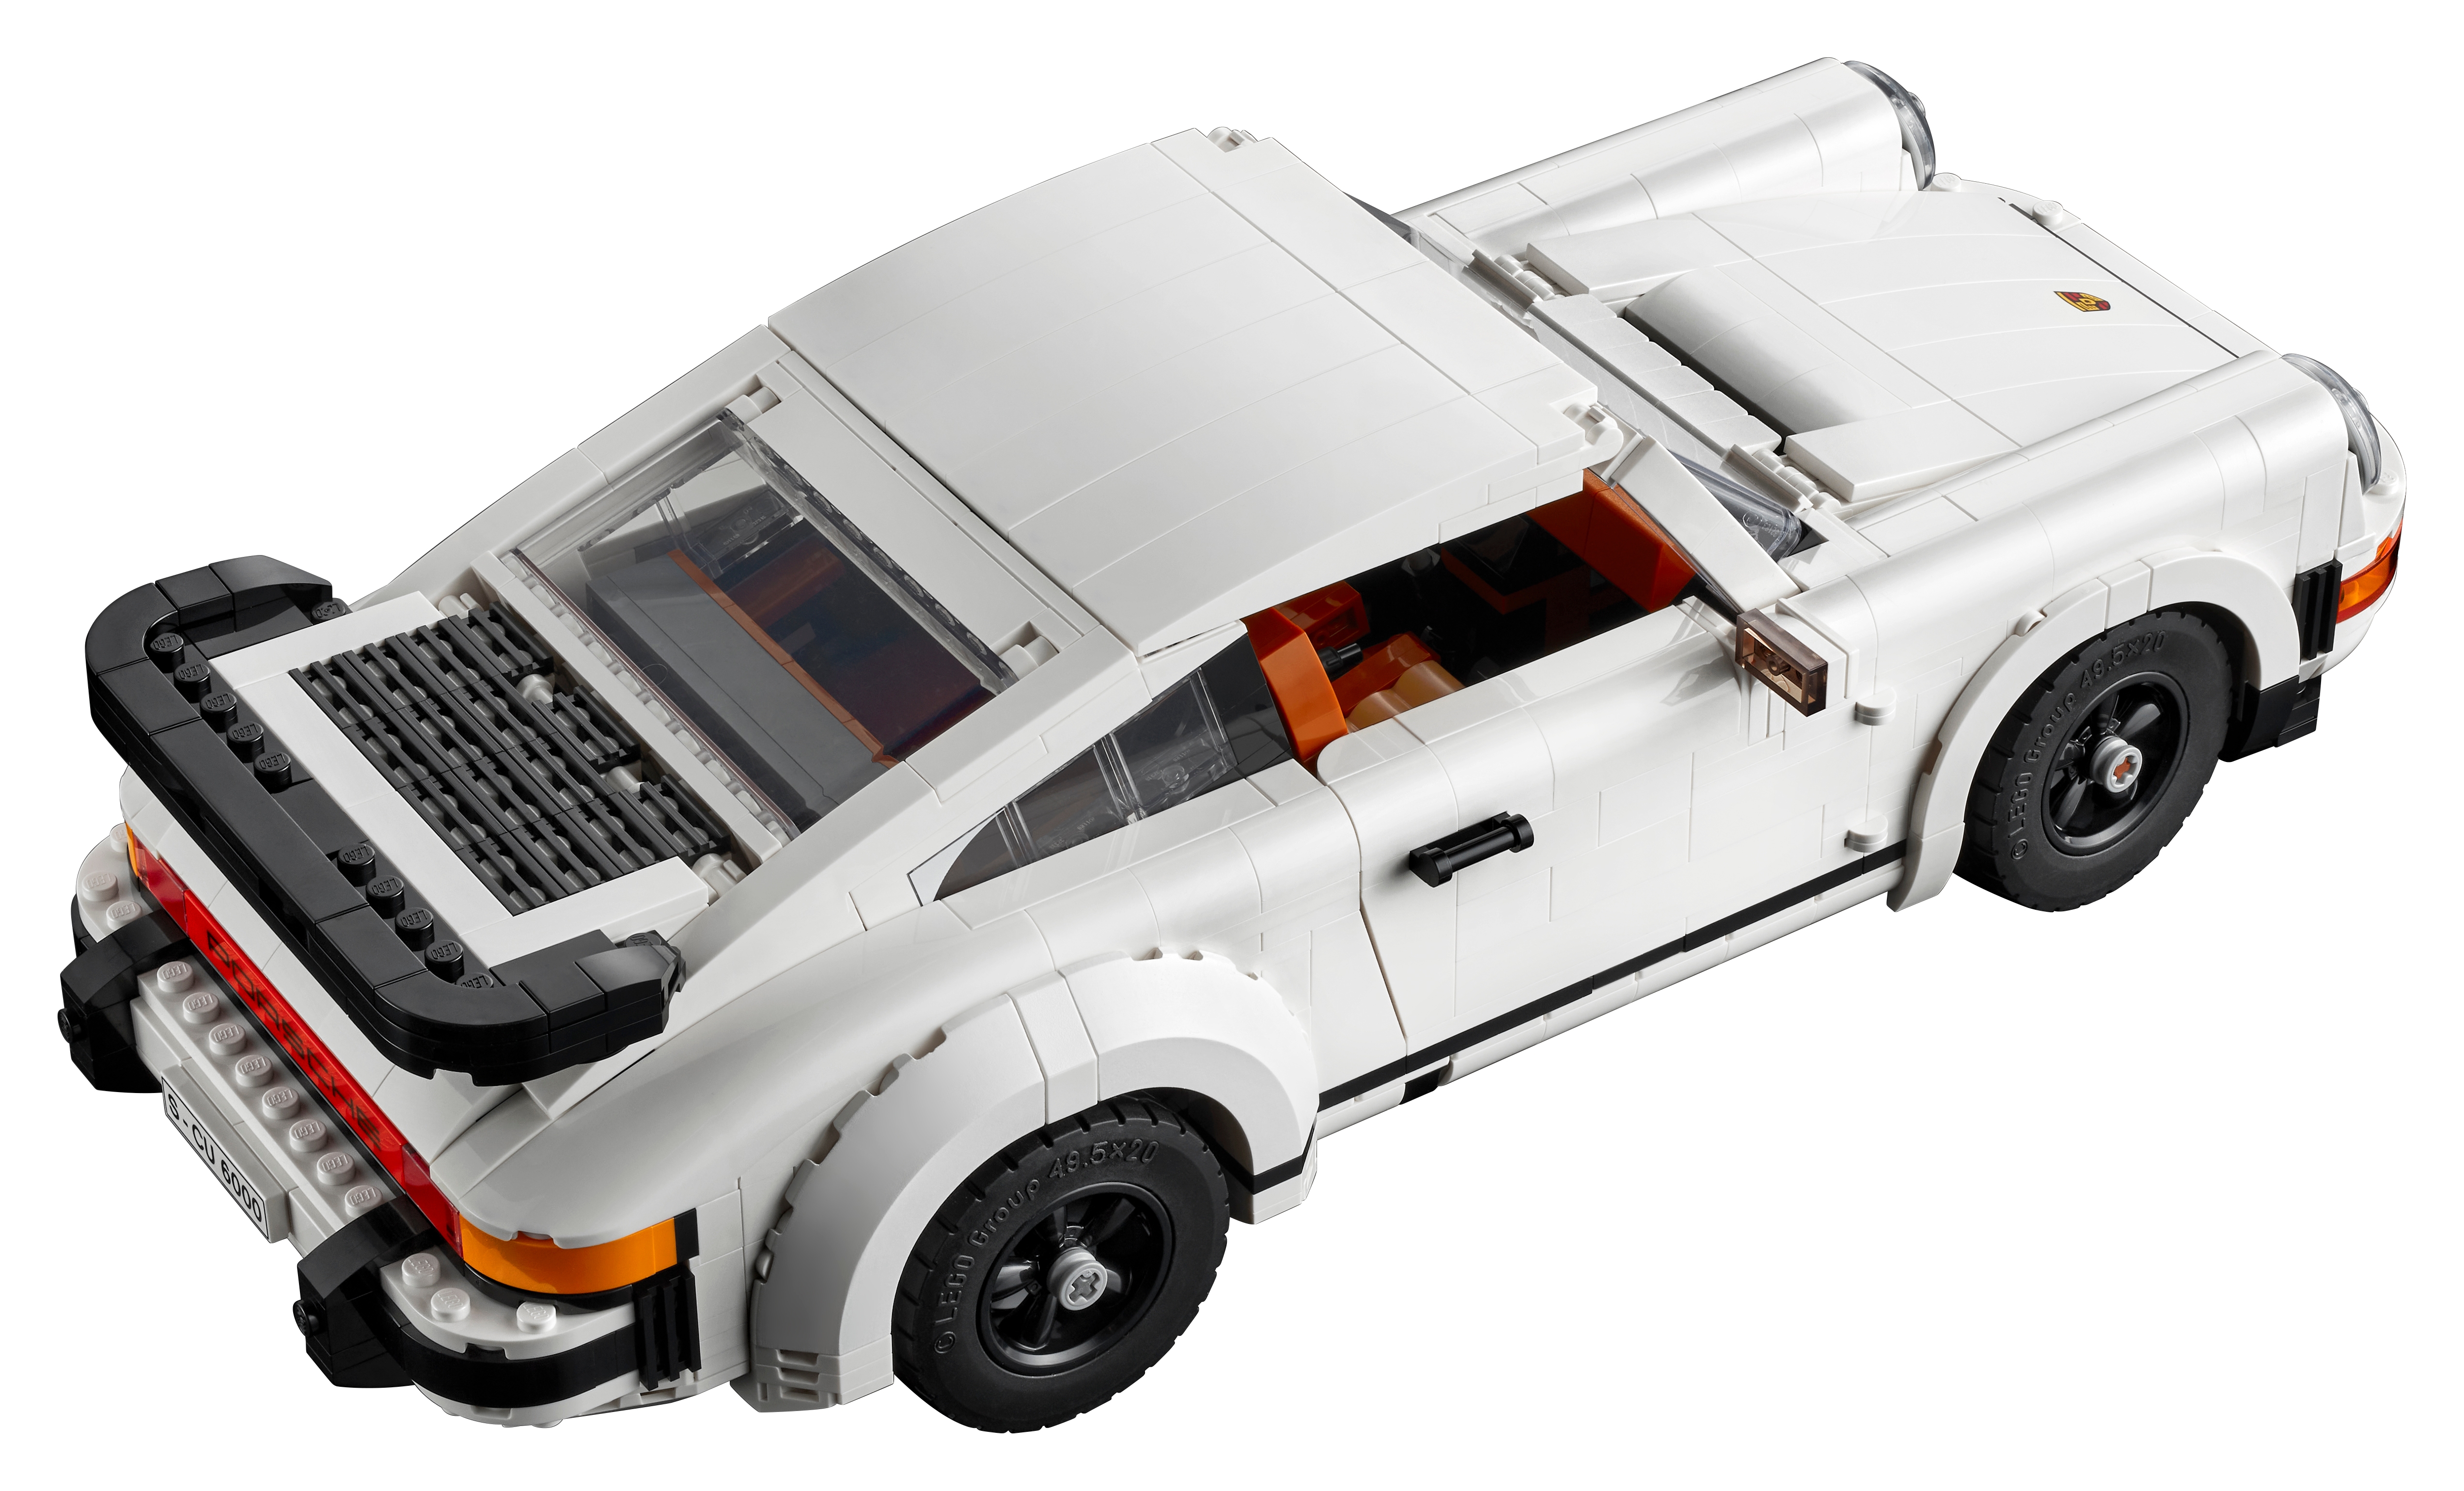 Porsche 911 10295, LEGO® Icons